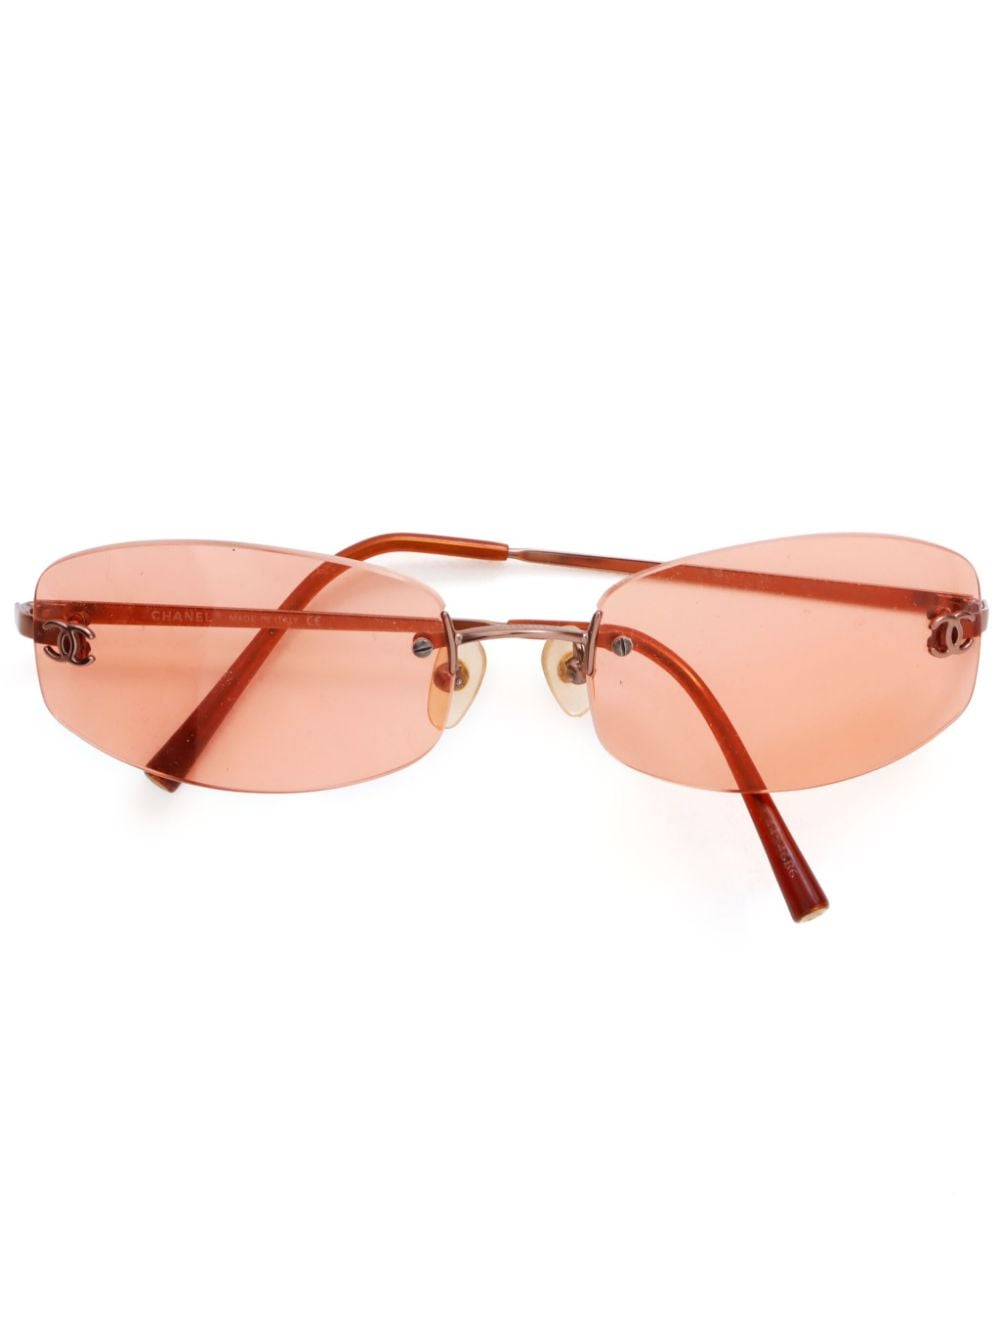 CHANEL Pre-Owned 2000s CC rimless sunglasses - Orange